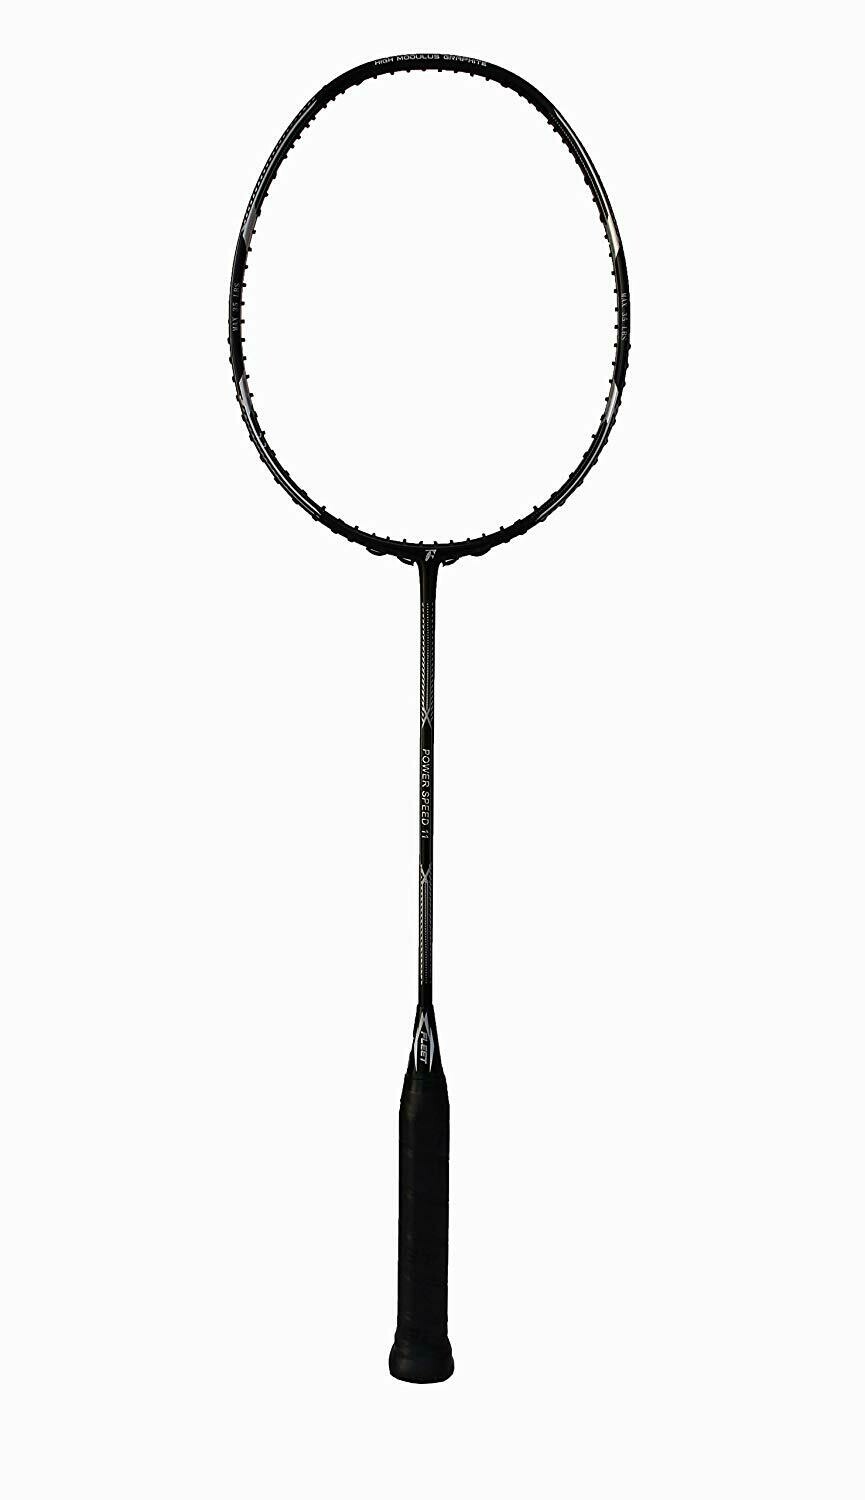 Fleet Power Speed 11 Professional Badminton Racquet Unstrung 3U-G2 35 LBS with Racquet Cover